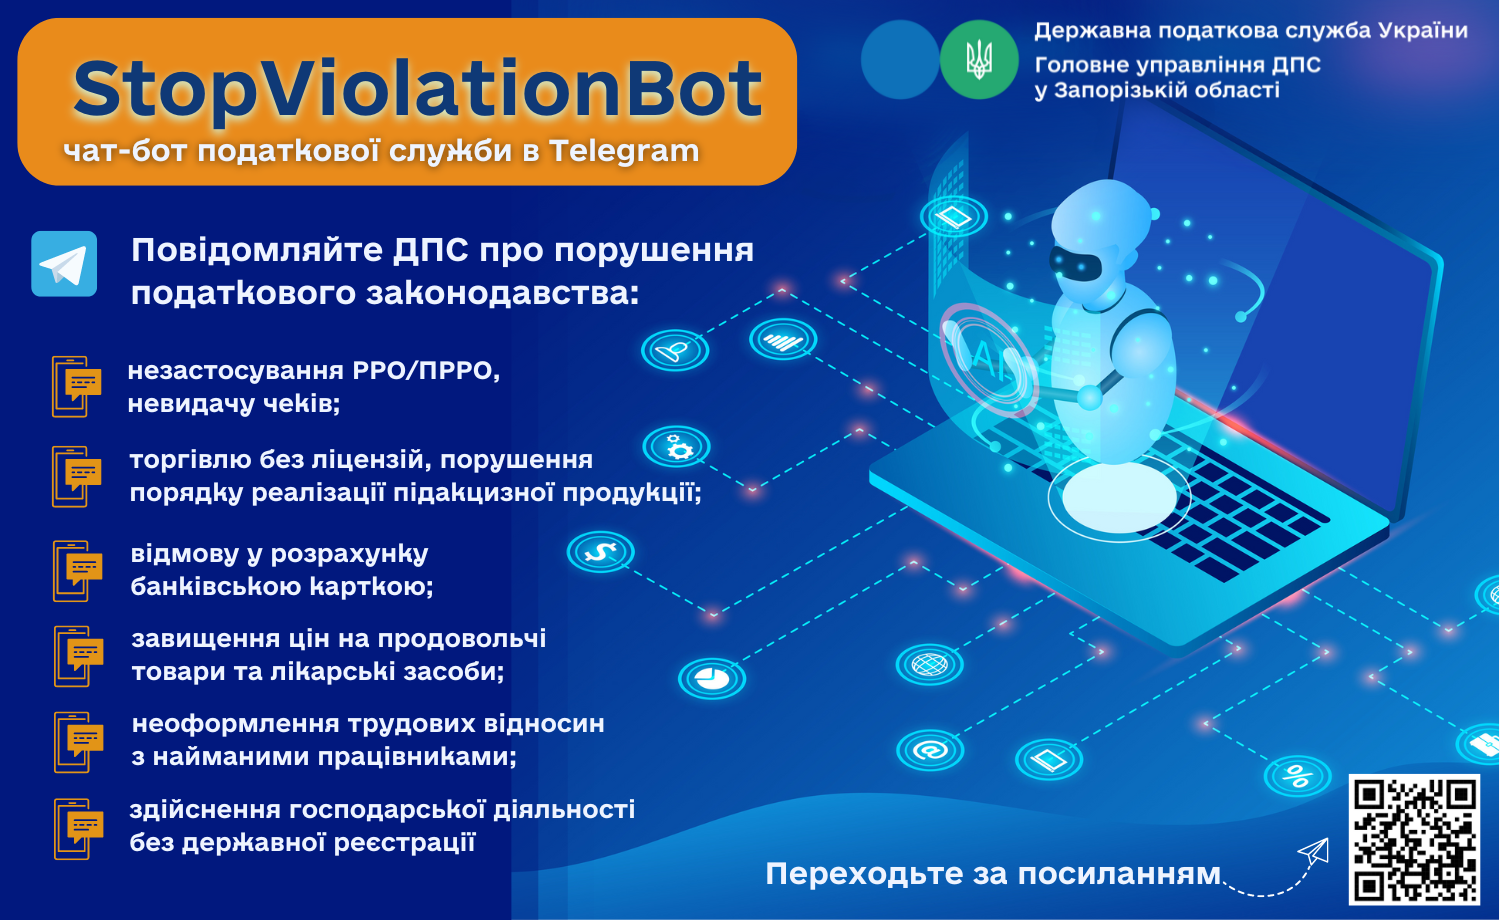 Повідомляйте податкову службу про порущення законодавства через чат-бот «StopViolationBot» в месенджері Telegram